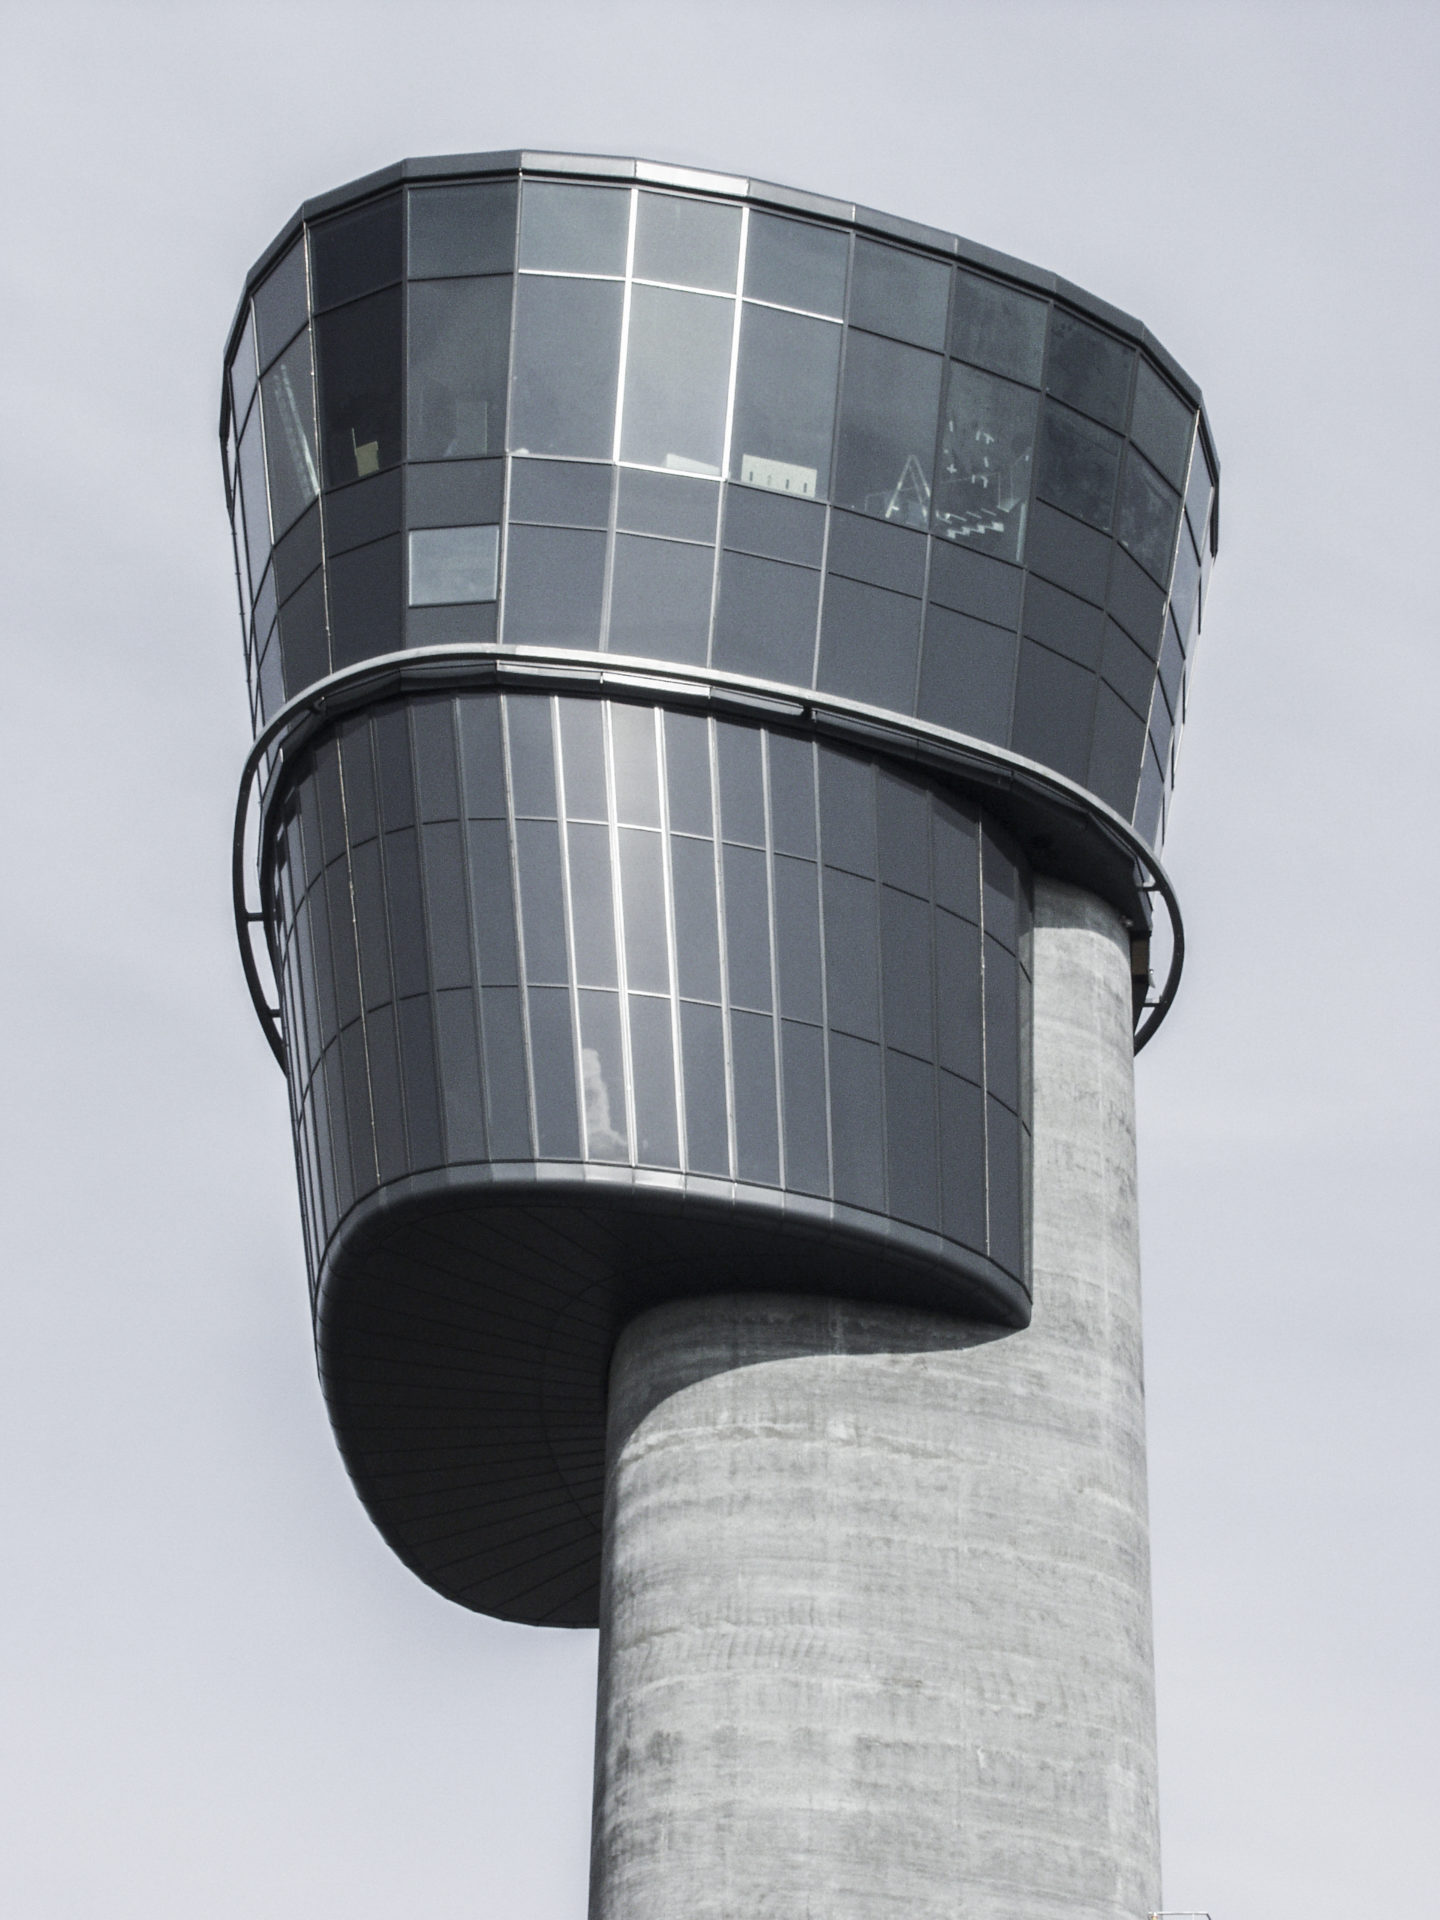 Kontroltårnet i Københavns Lufthavn